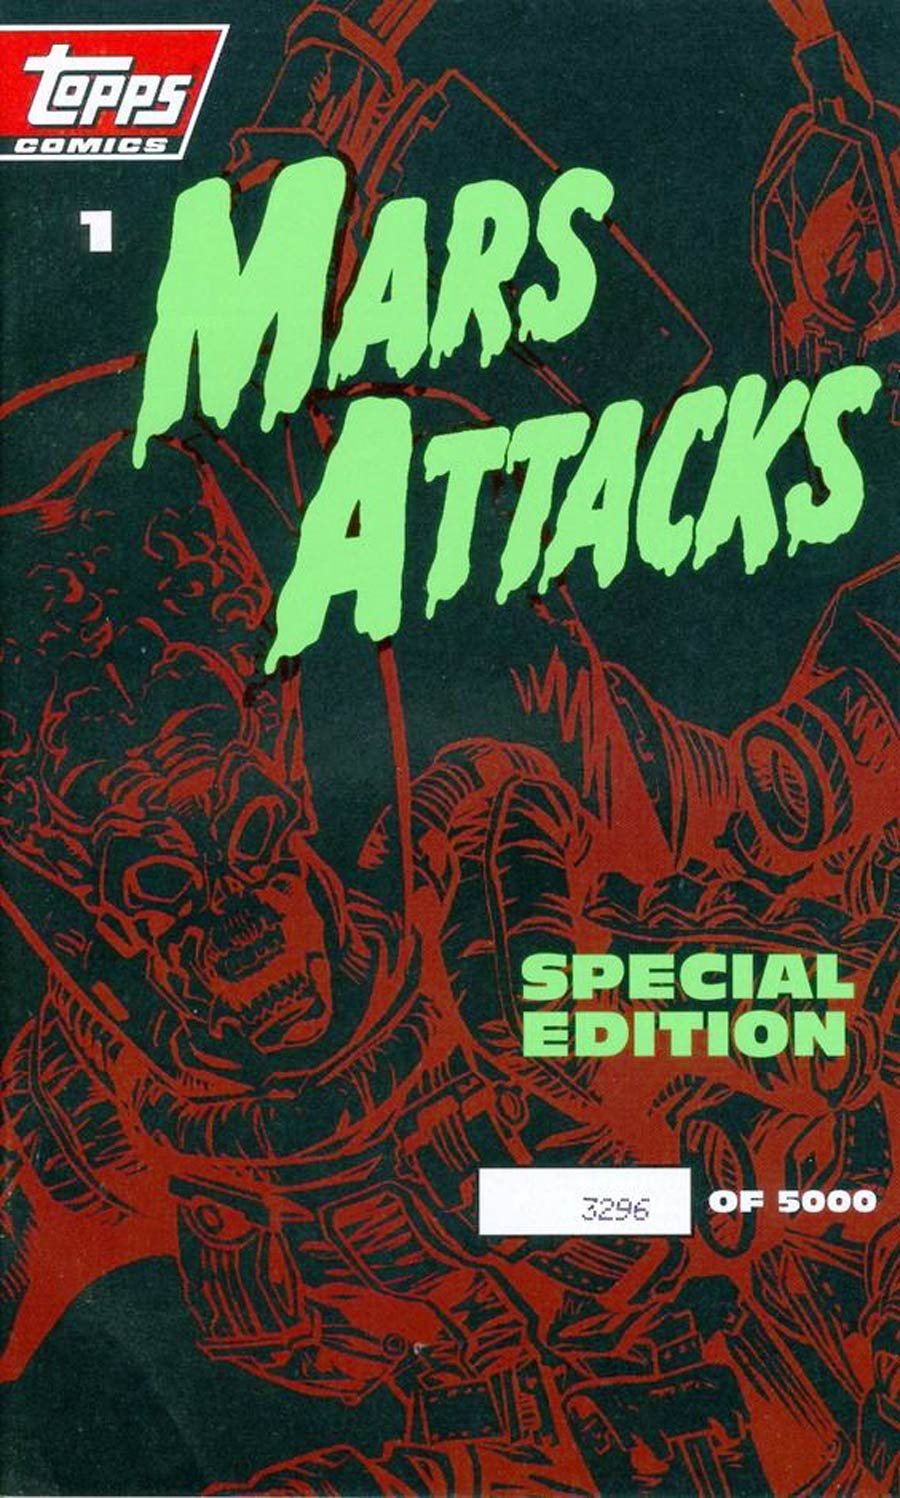 Mars Attacks Special Edition